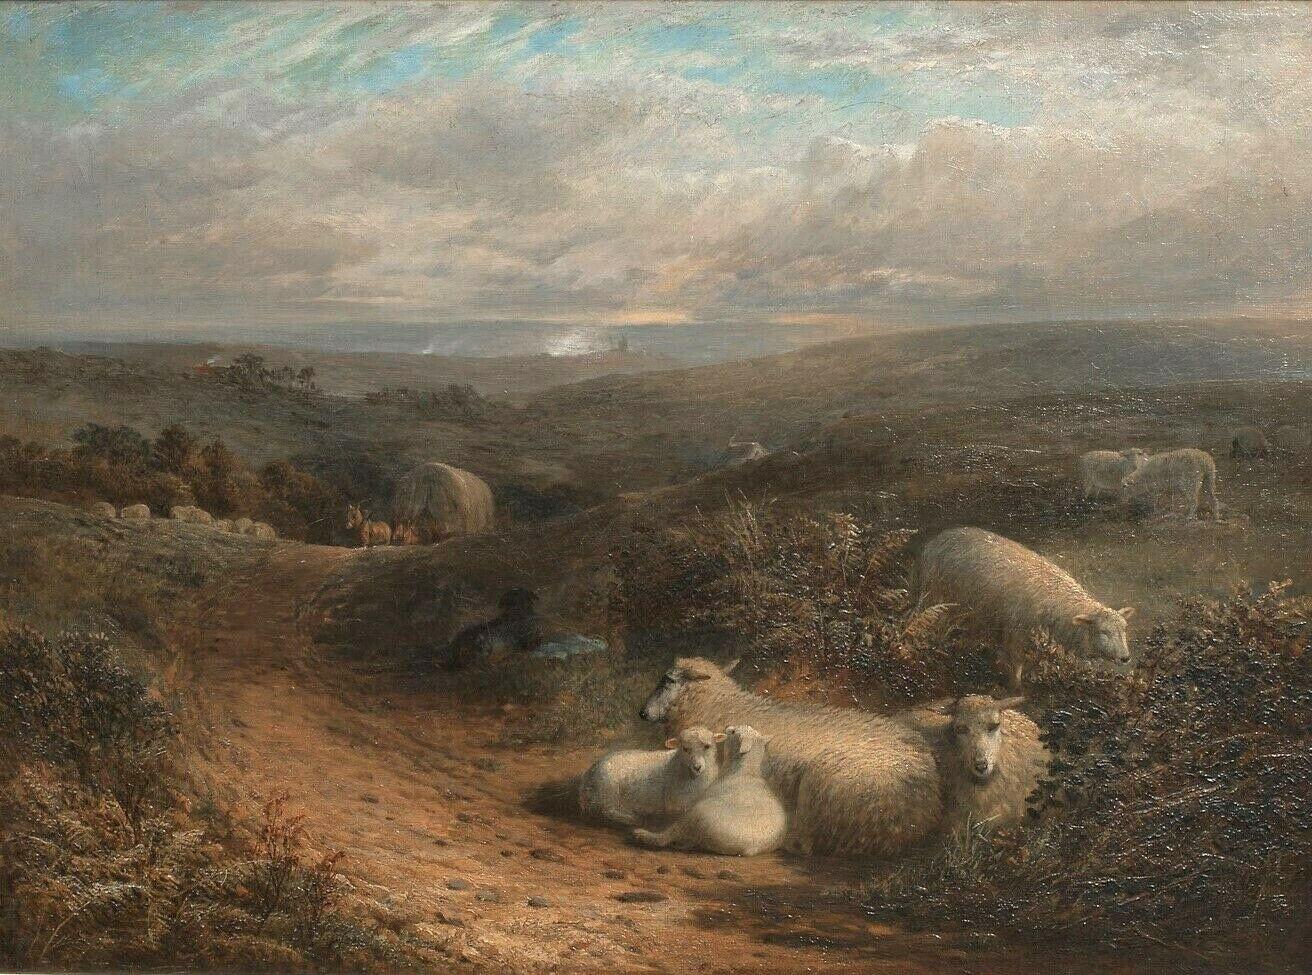 Portrait Painting George Cole - Moutons se reposant dans un paysage, près de Guildford, Surrey, 19e siècle 